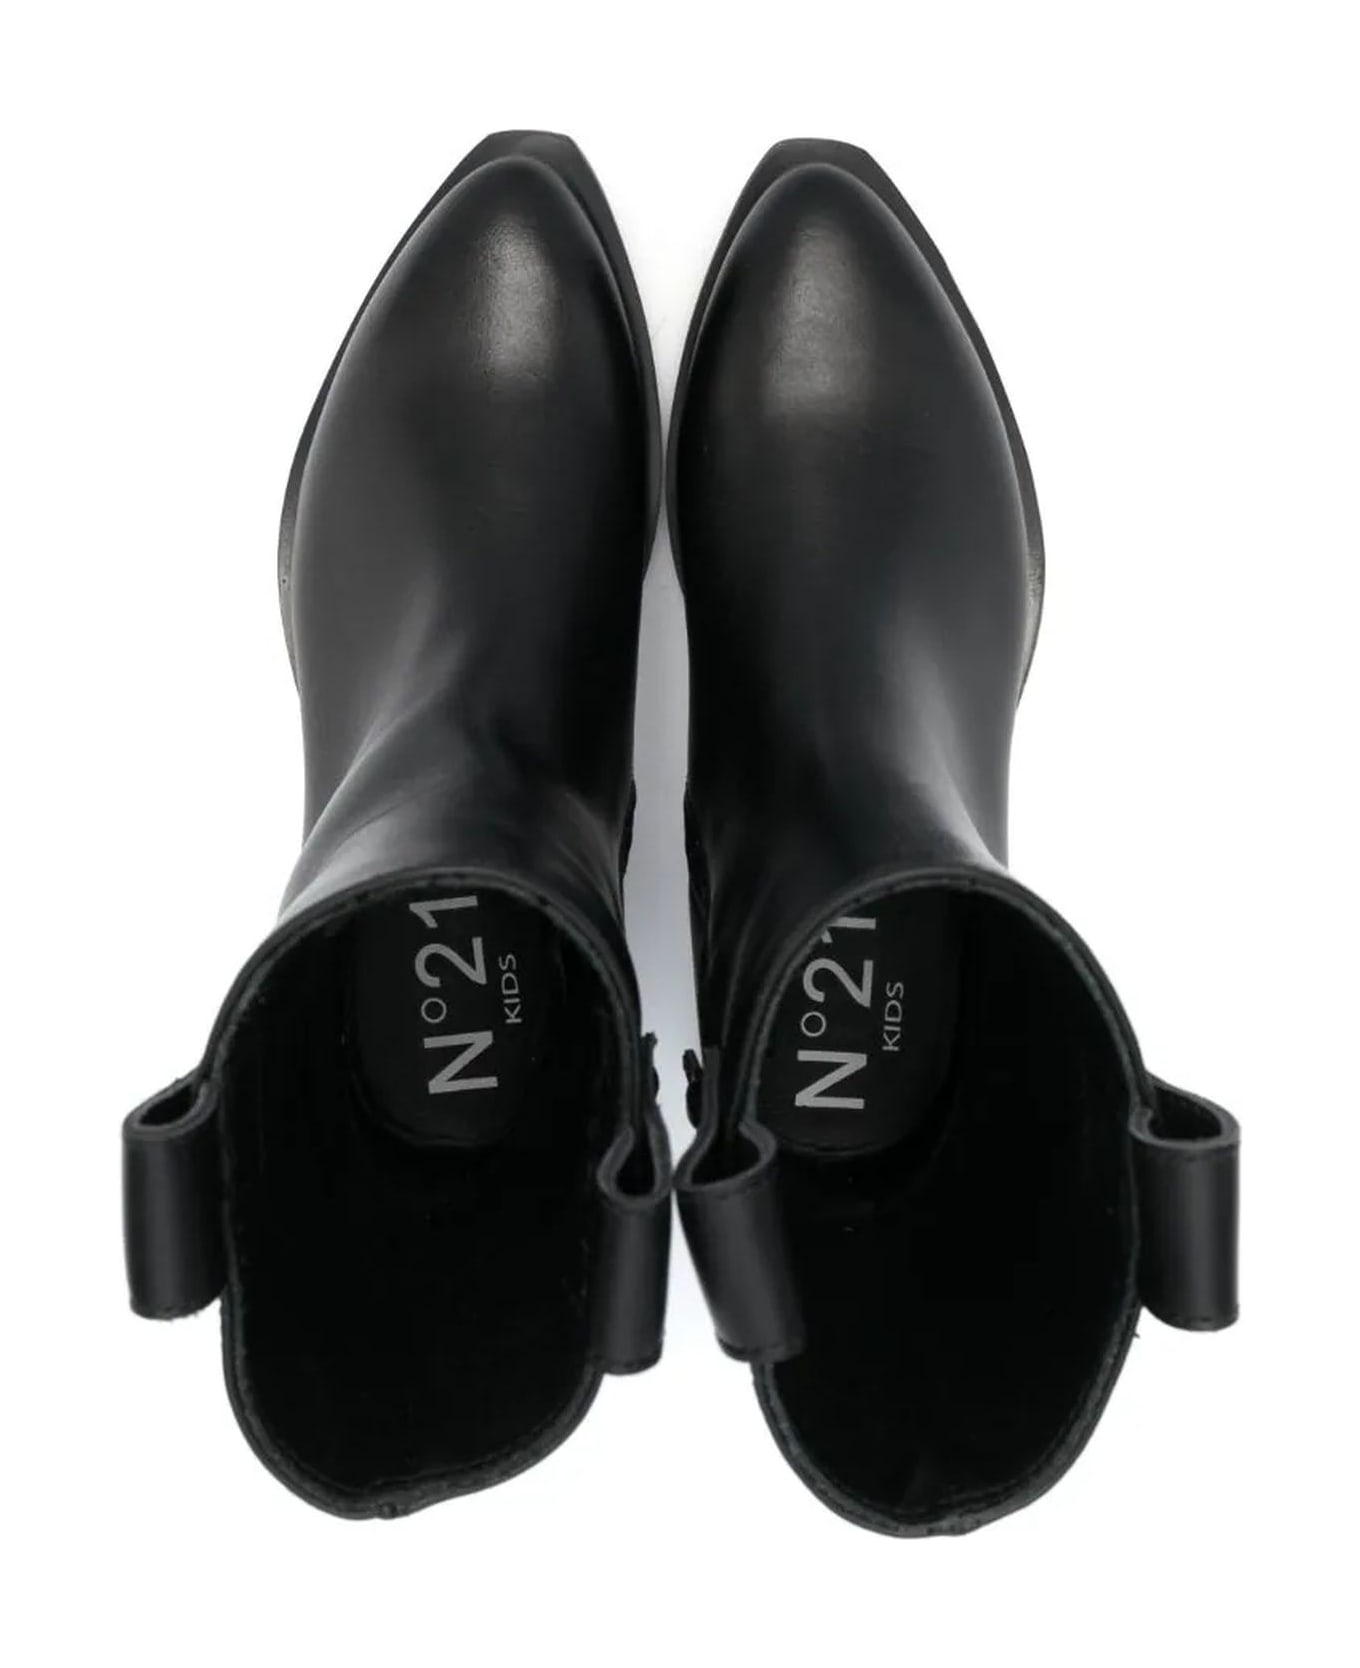 N.21 N°21 Boots Black - Black